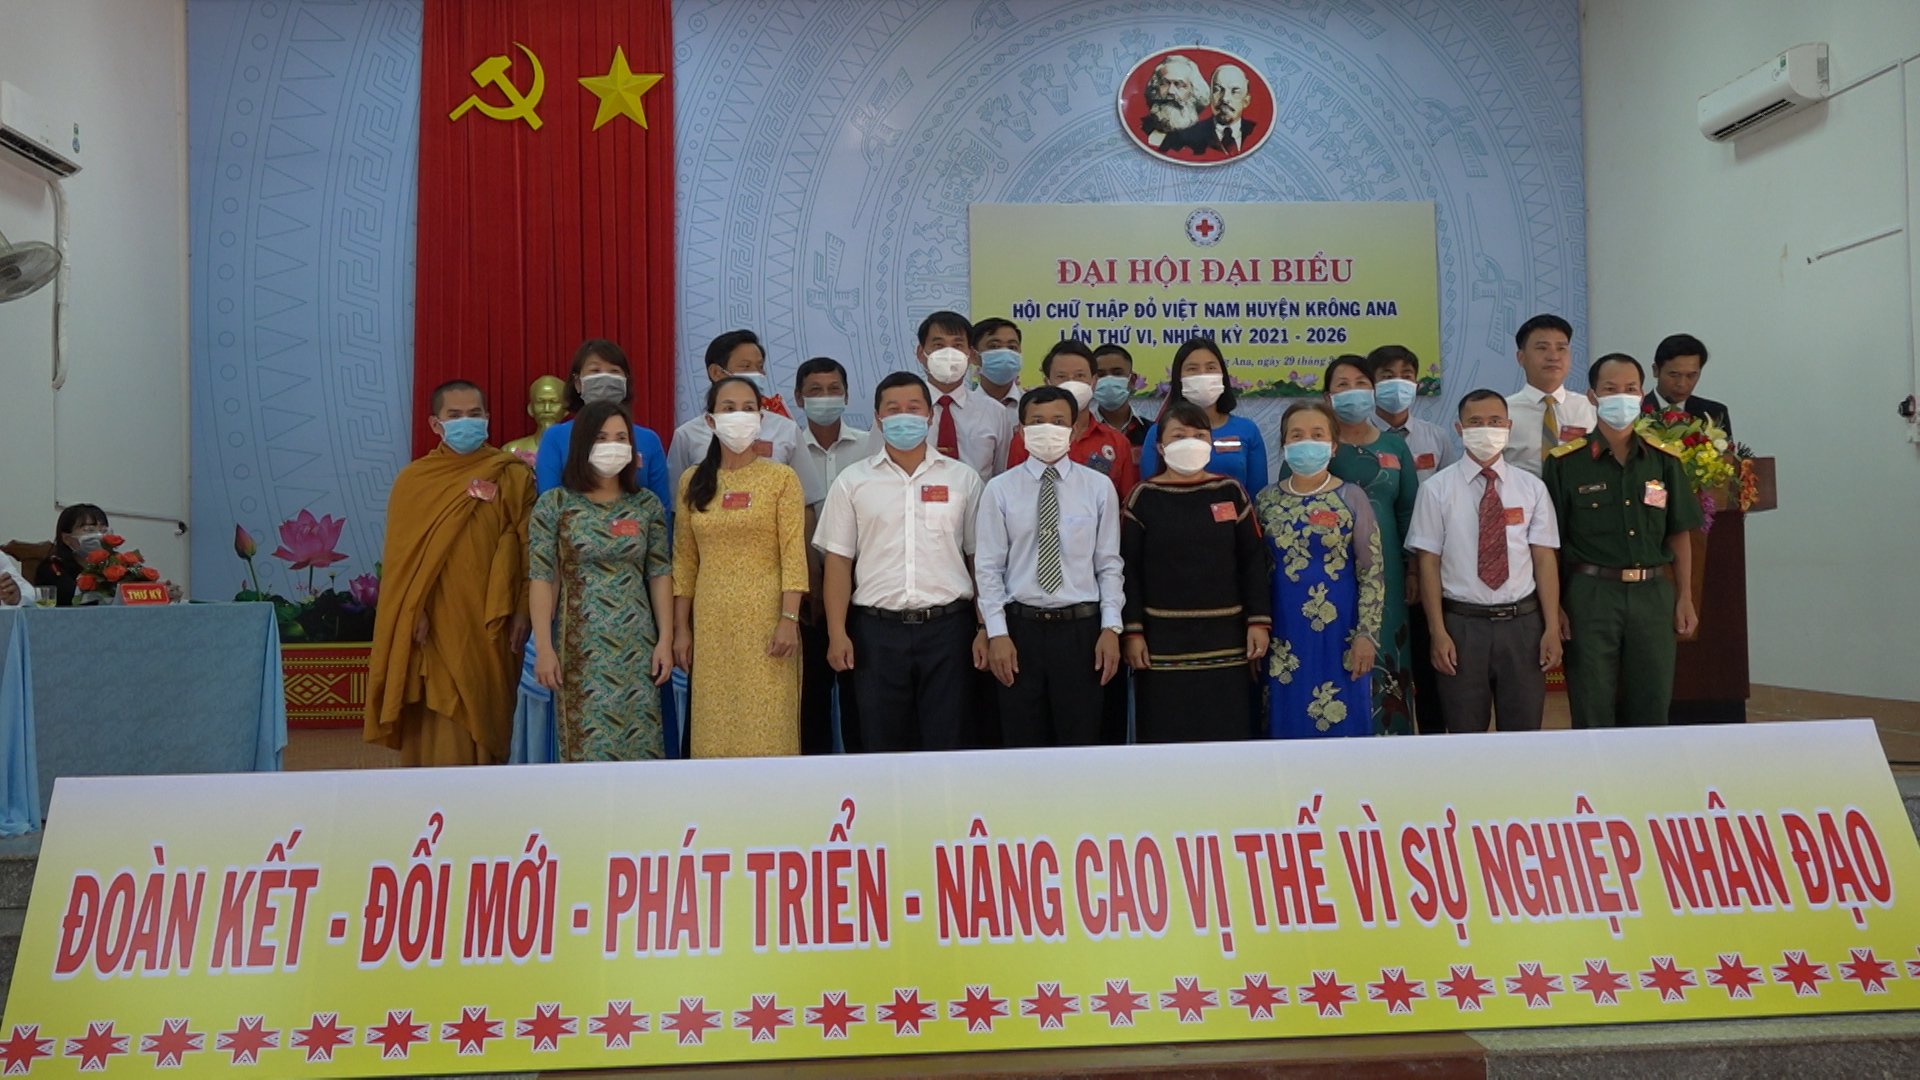 Đại hội đại biểu Hội chữ thập đỏ huyện Krông Ana lần thứ VI, nhiệm kỳ 2021-2026